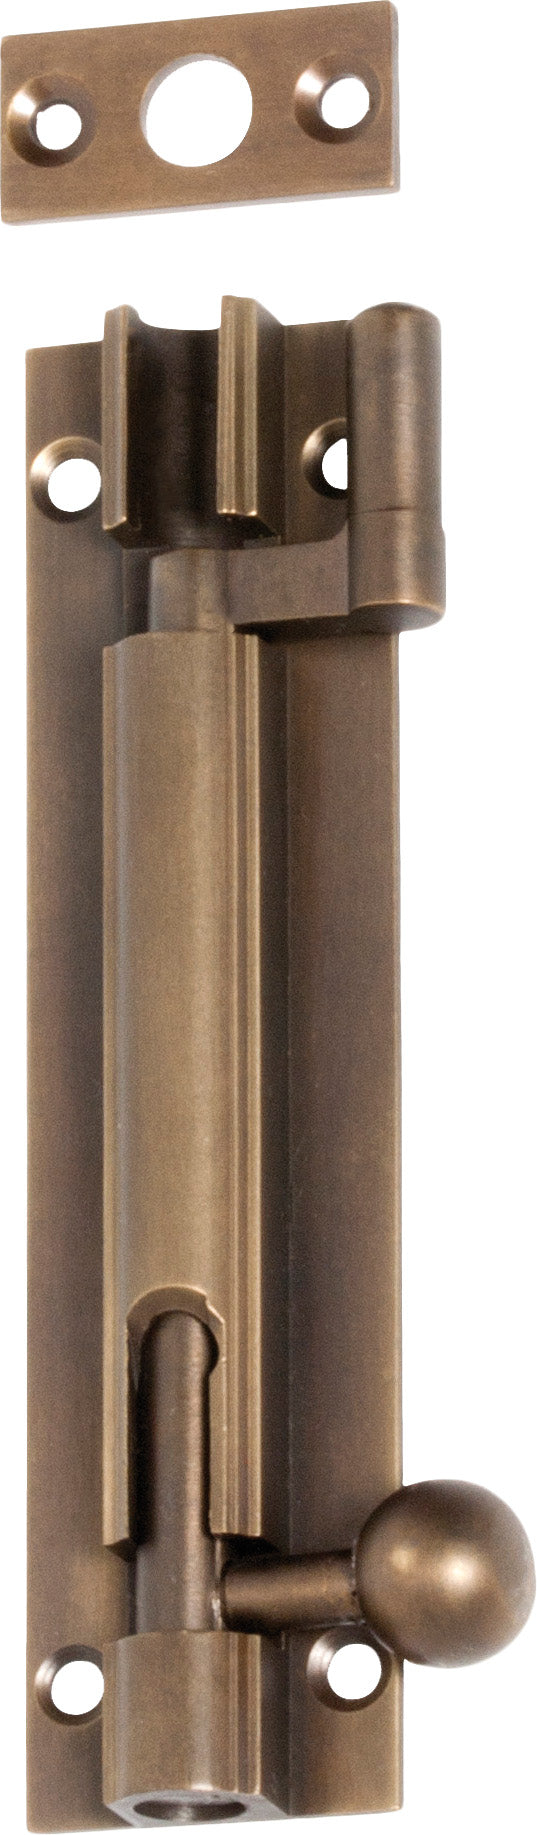 Barrel Bolt Offset Antique Brass L100xW25mm